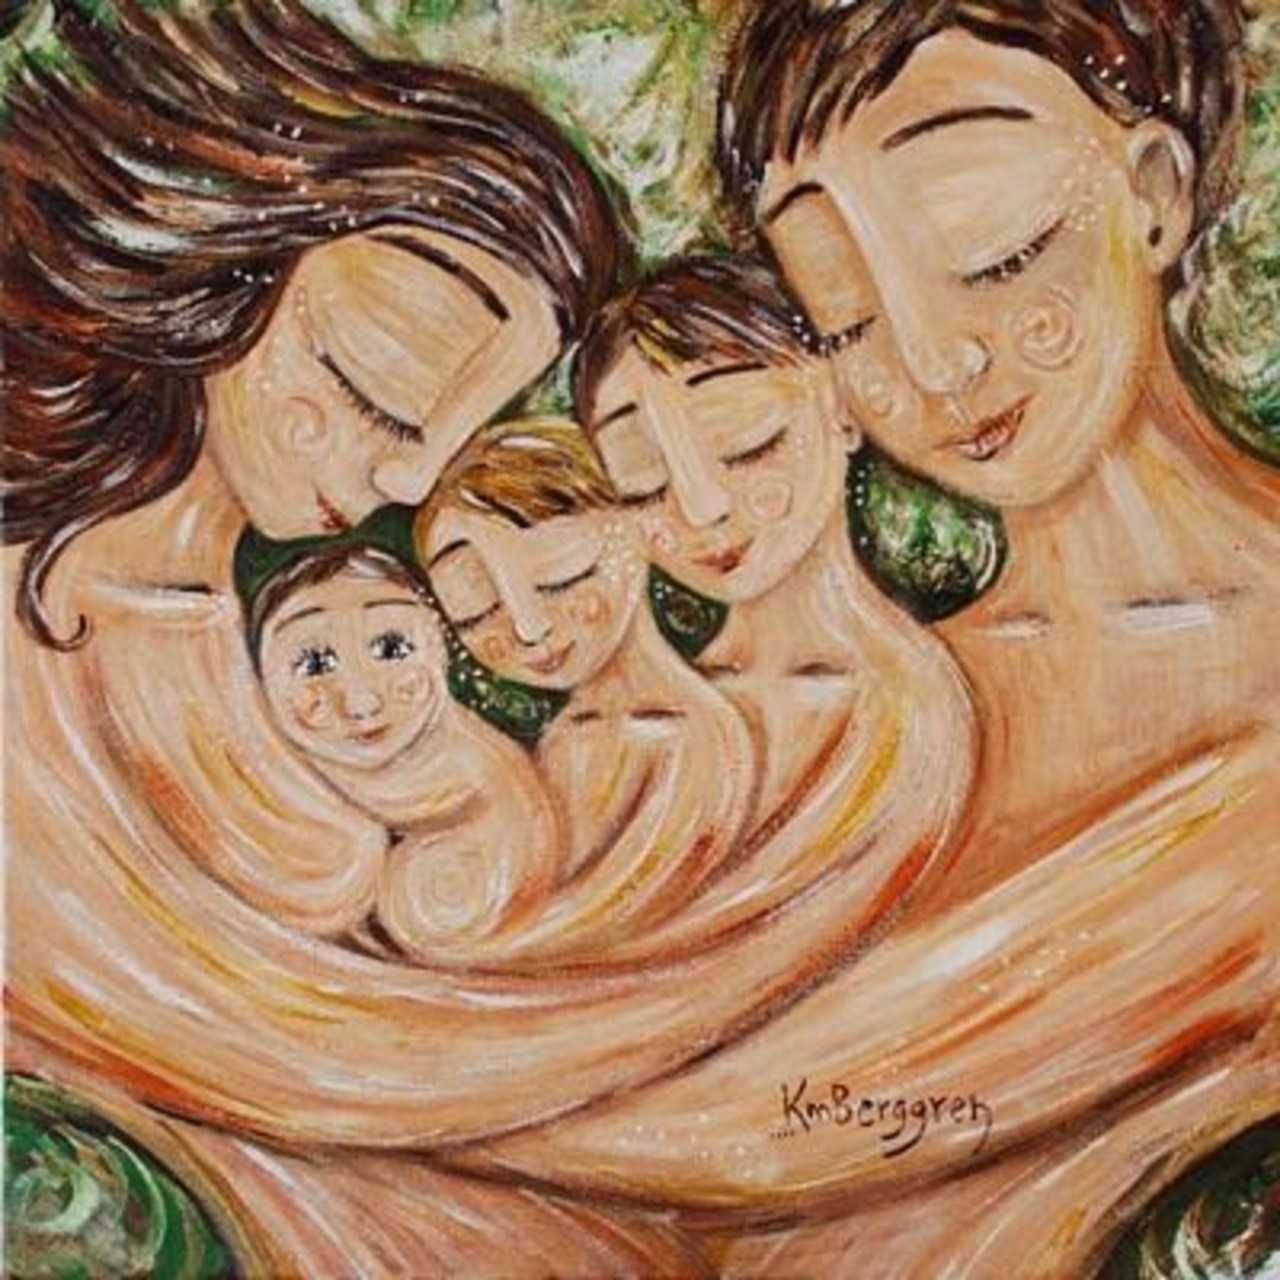 Двойное материнство. Кэти Берггрен картины семья. Художник Кэти Берггрен счастливая семья. Кэти Берггрен трое детей. Кэти Берггрен картины семья трое детей.